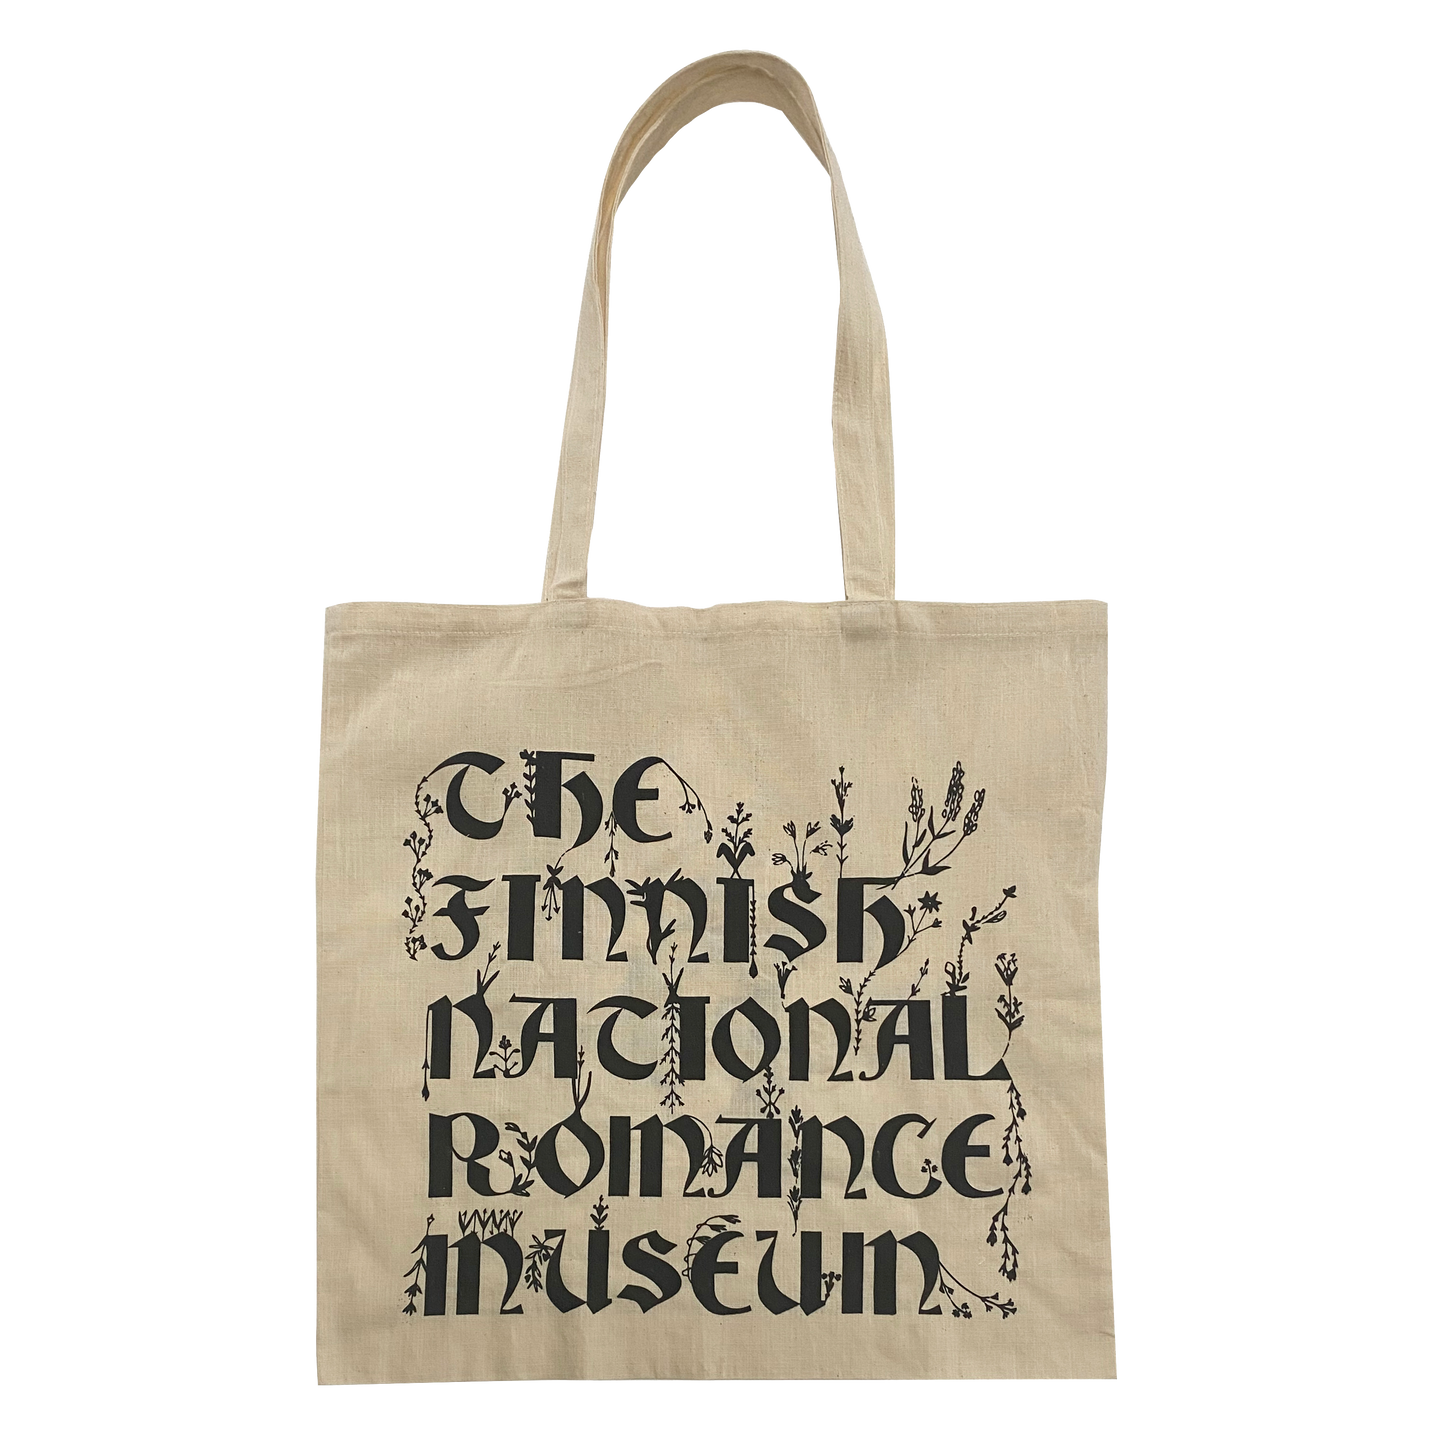 MUSEO Gift bag